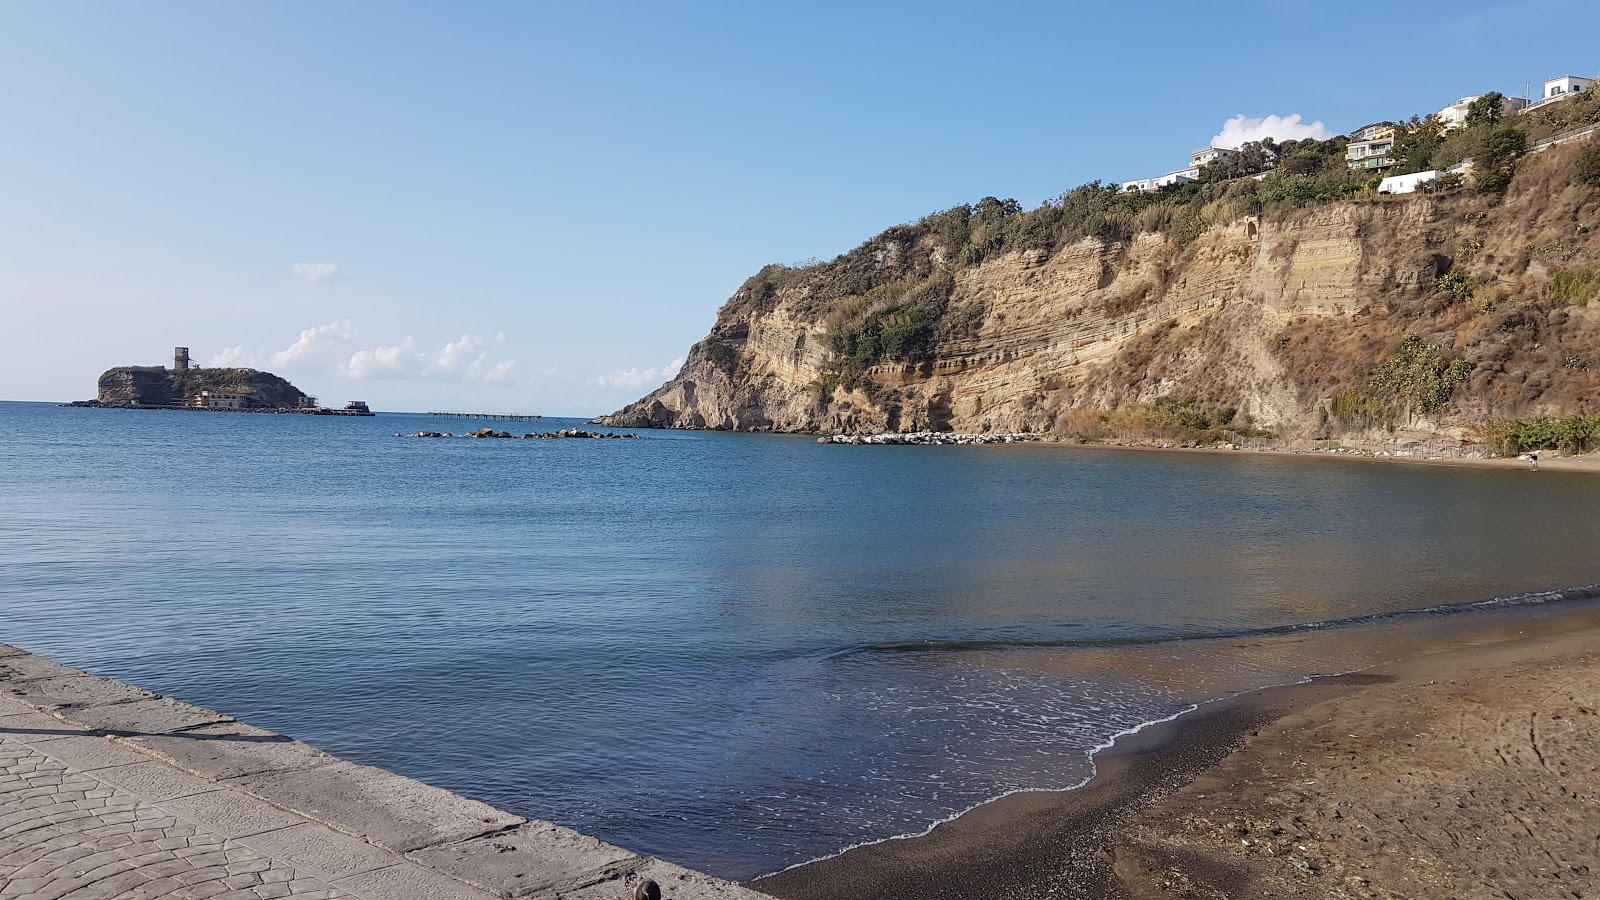 Photo of Spiaggia di Acquamorta with gray sand surface